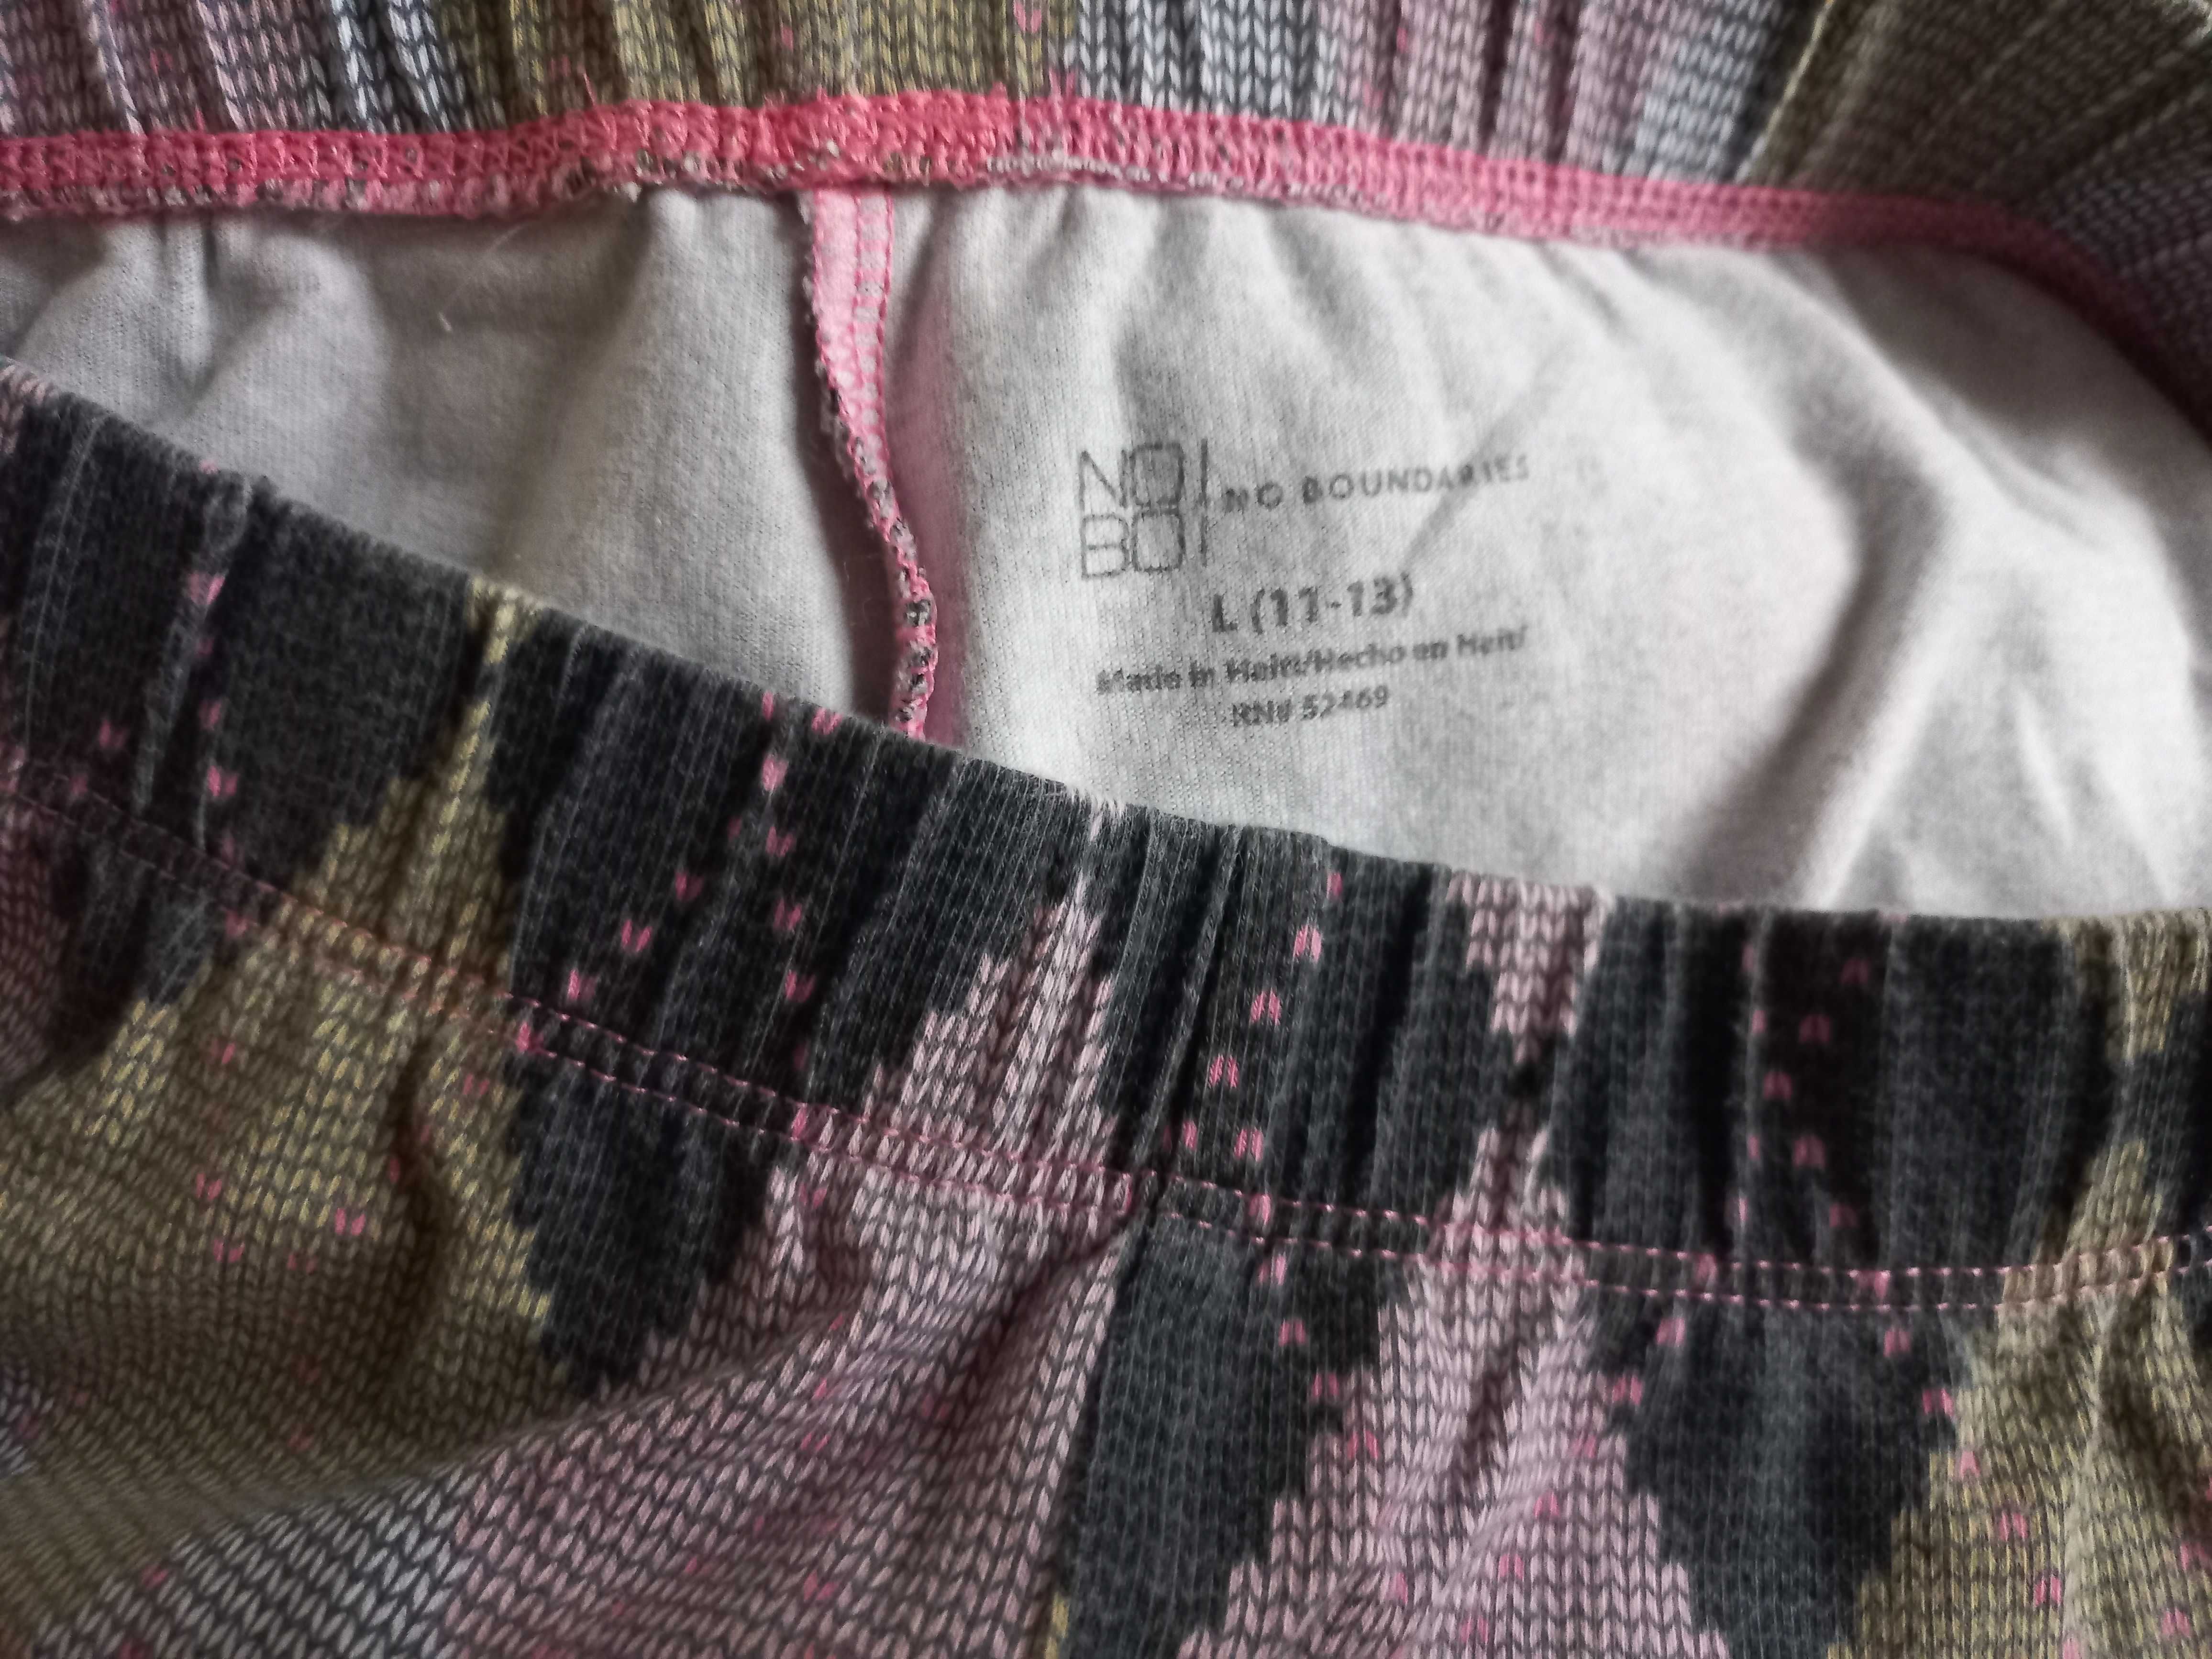 Spodnie damskie Leginsy r. L sweterkowy wzór NOWE